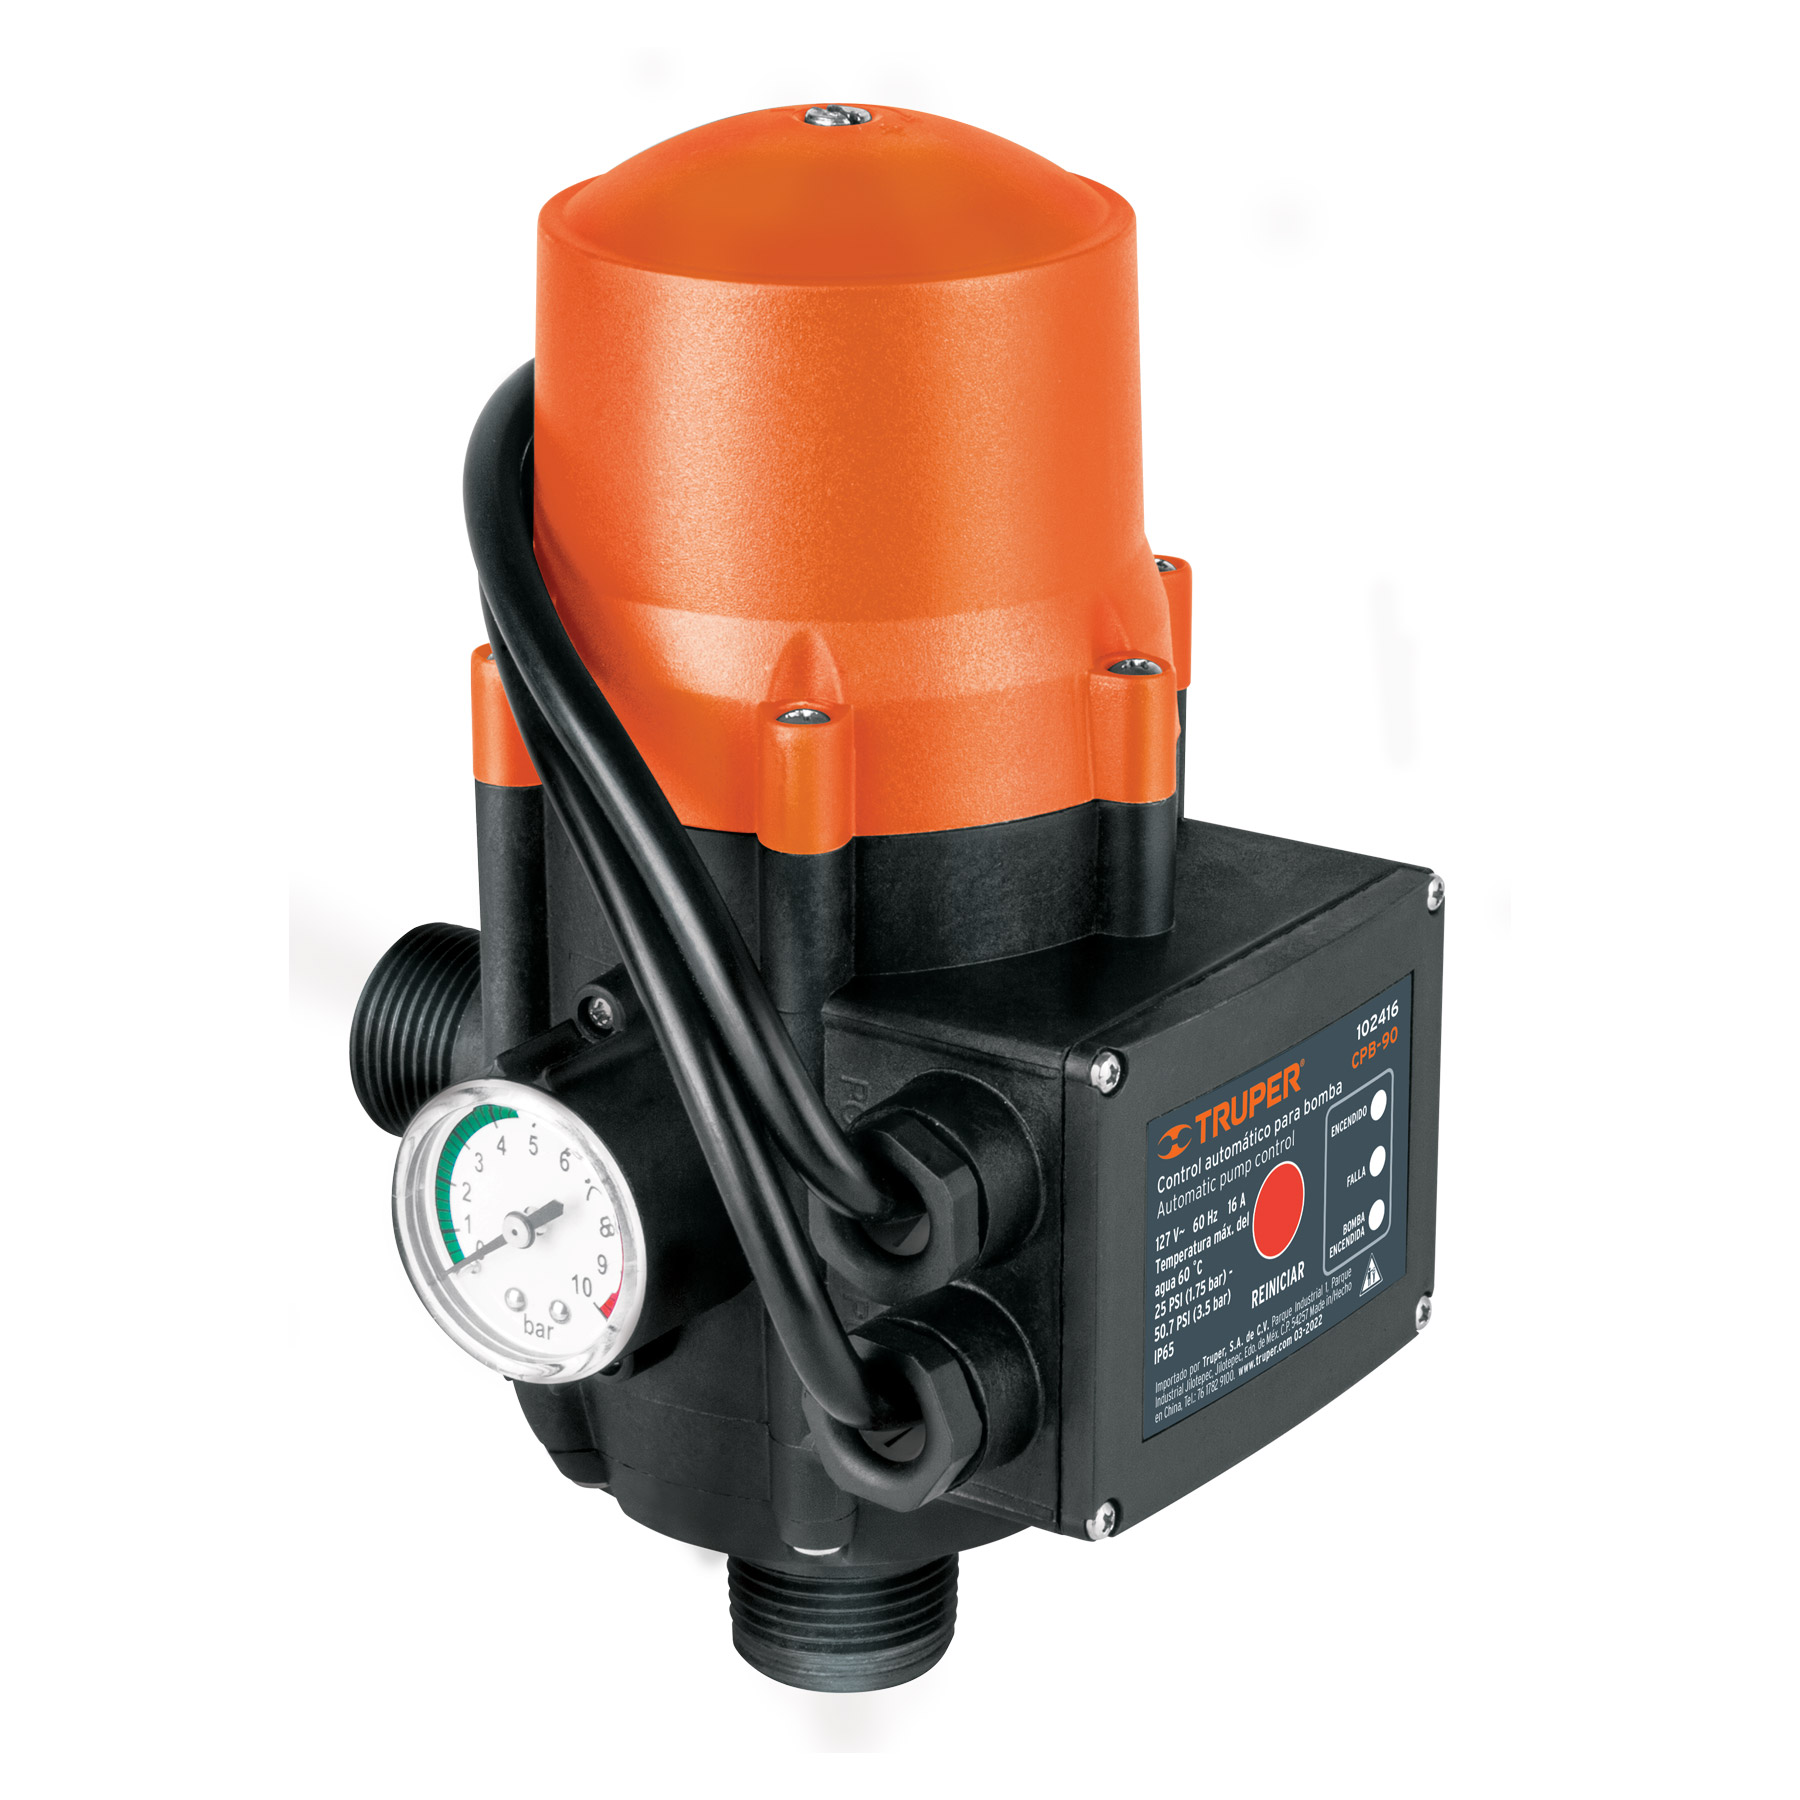 Control automático de presión de bombas para agua 90°